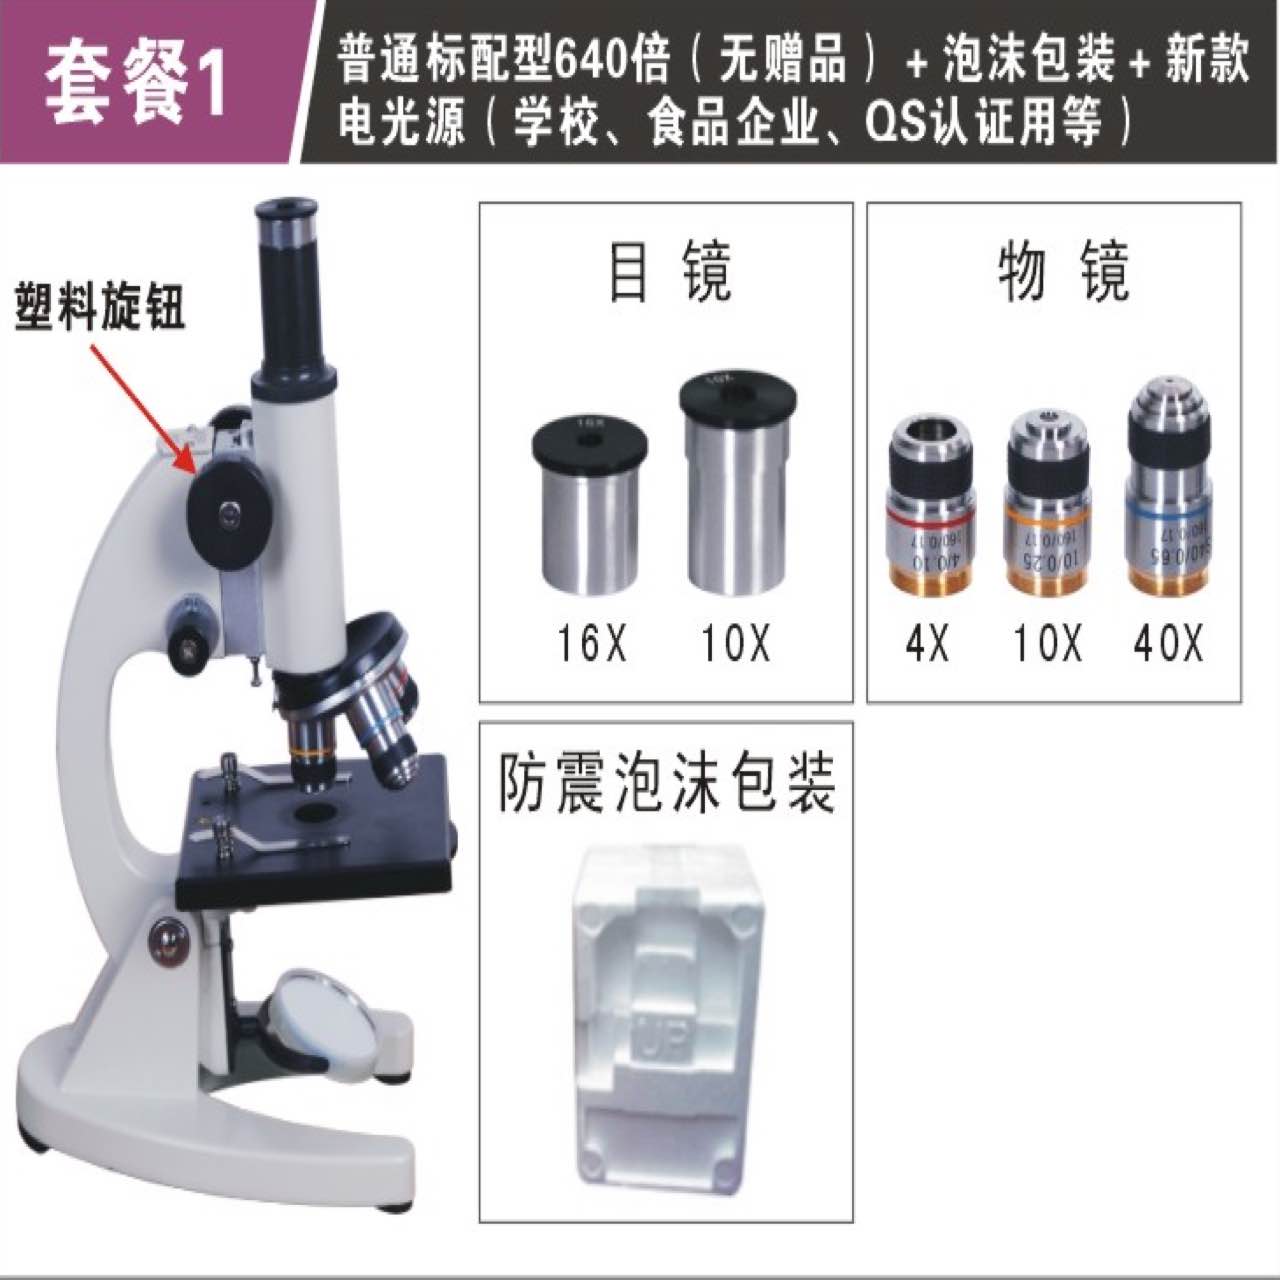 专业生物显微镜 学生用光学生物显微镜 宁波凤凰显微镜640/2500倍